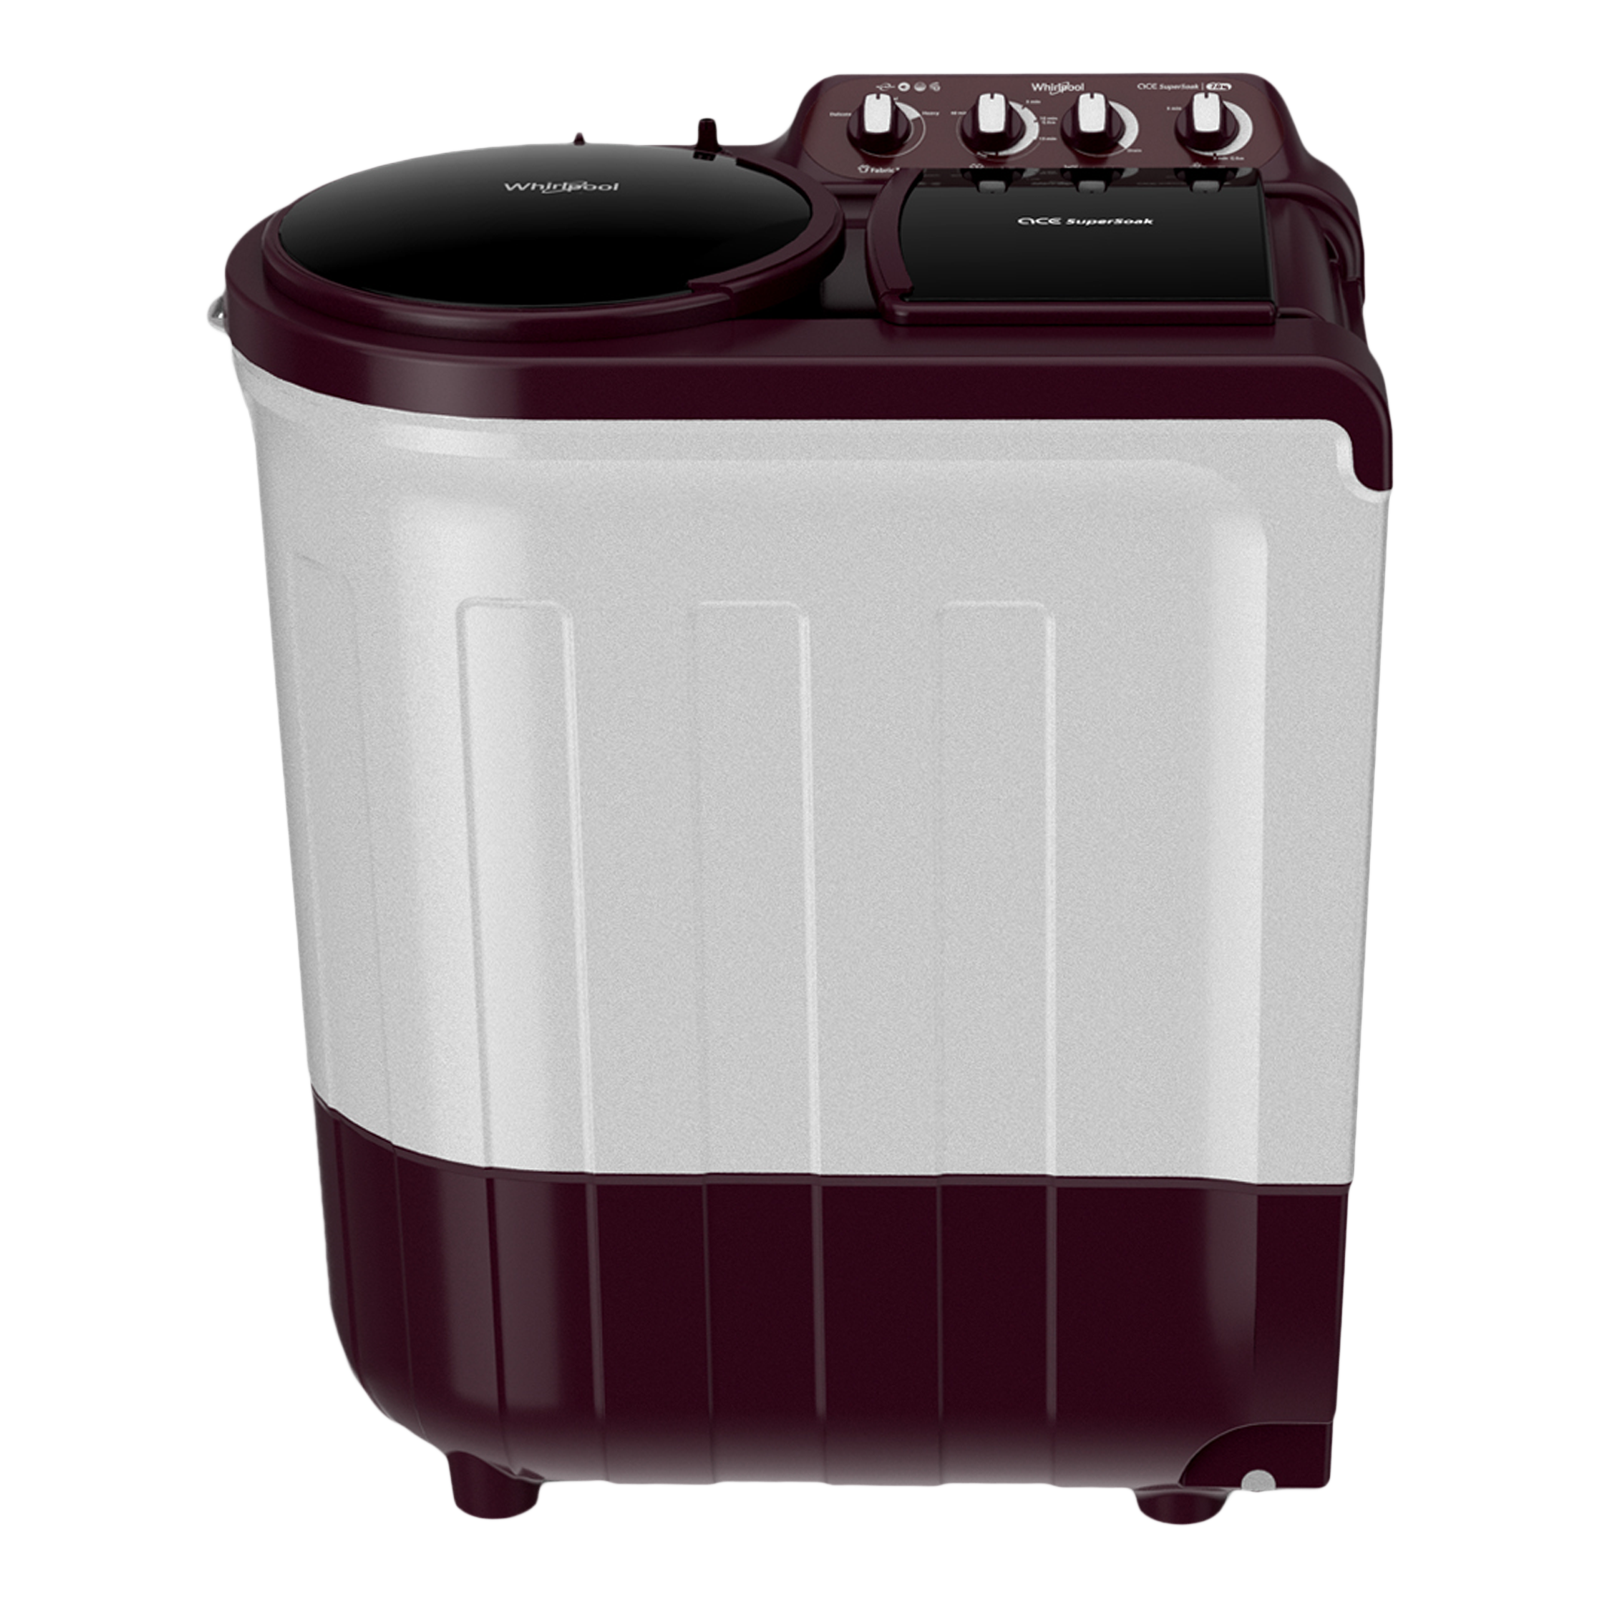 Whirlpool 7 Kg 5 Star Semi- Automatic Washing Machine with Soak Technology (Ace Supreme Pro, 30298, Wine)_1